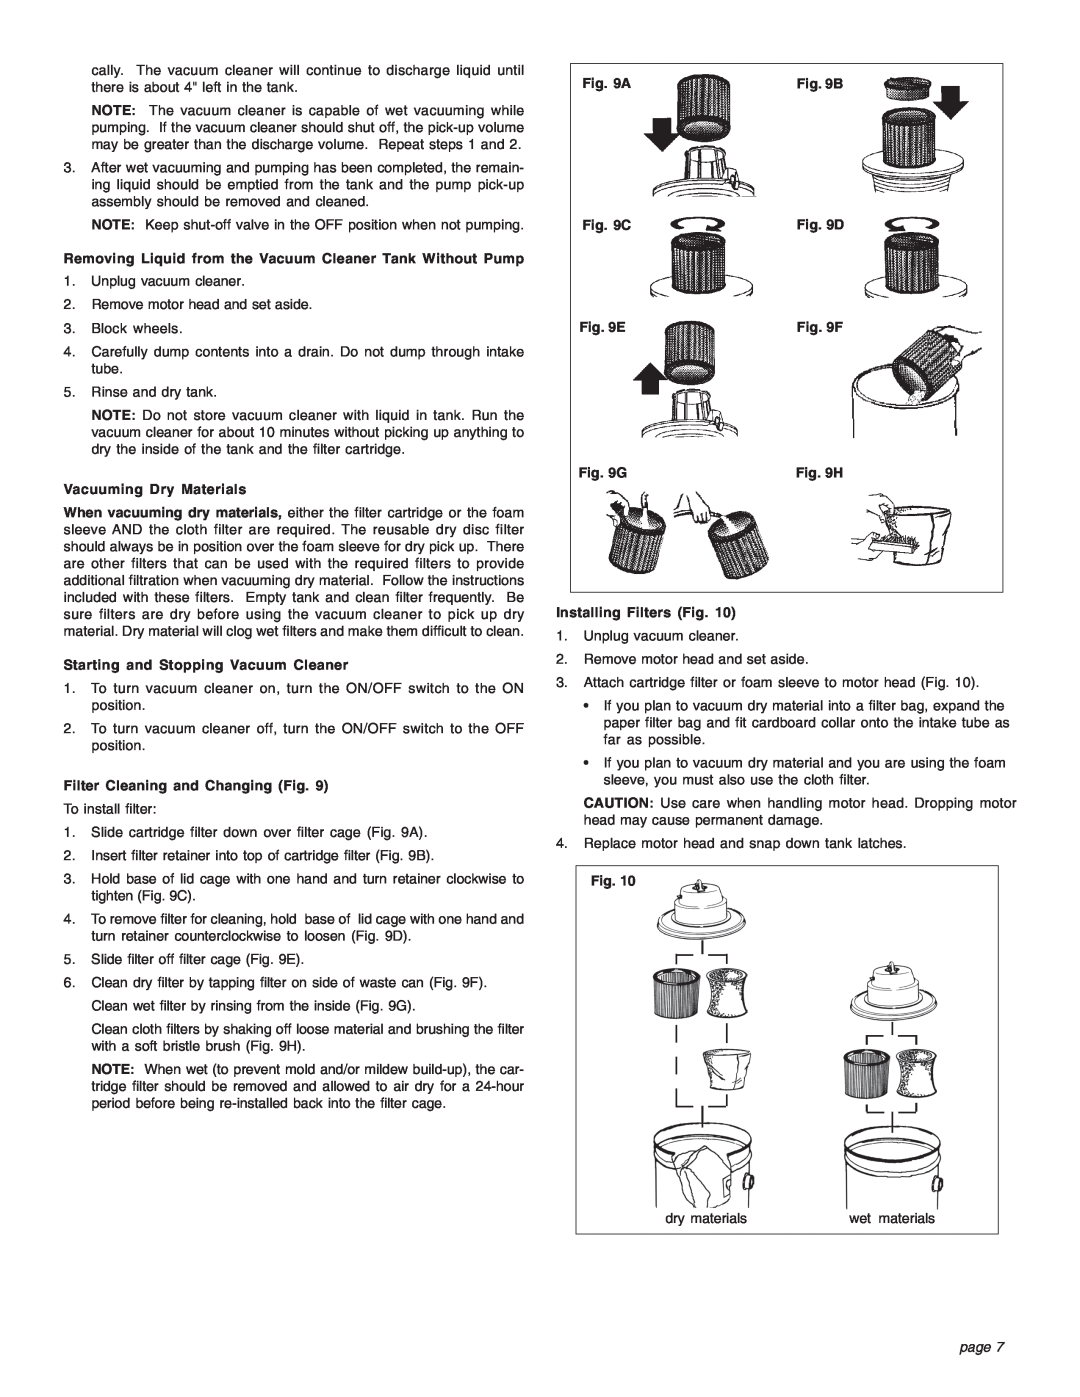 Intec 8940-20 manual Vacuuming Dry Materials, page 